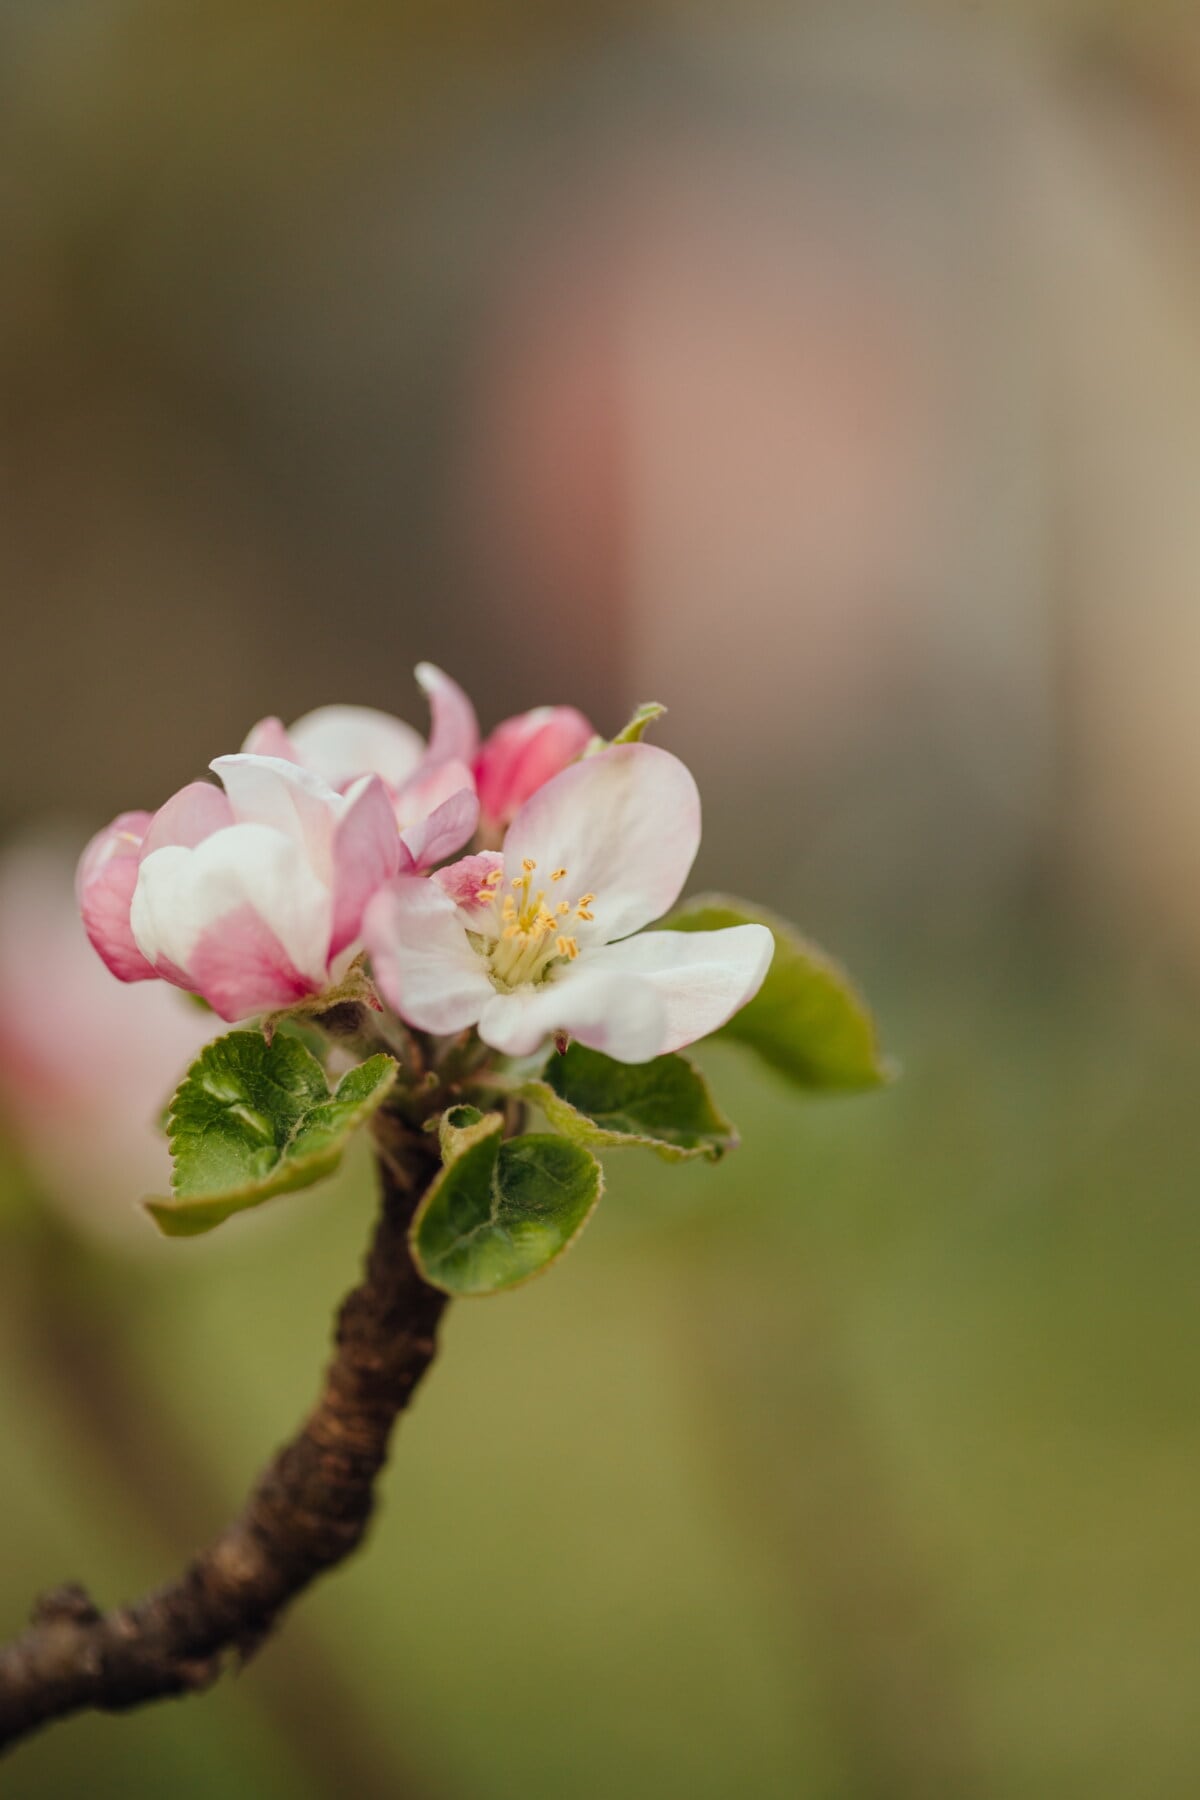 jabloň, peľ, biely kvet, jarný čas, zväčšenie, piestik, lupienok, rozostrenie, jablko, kvet